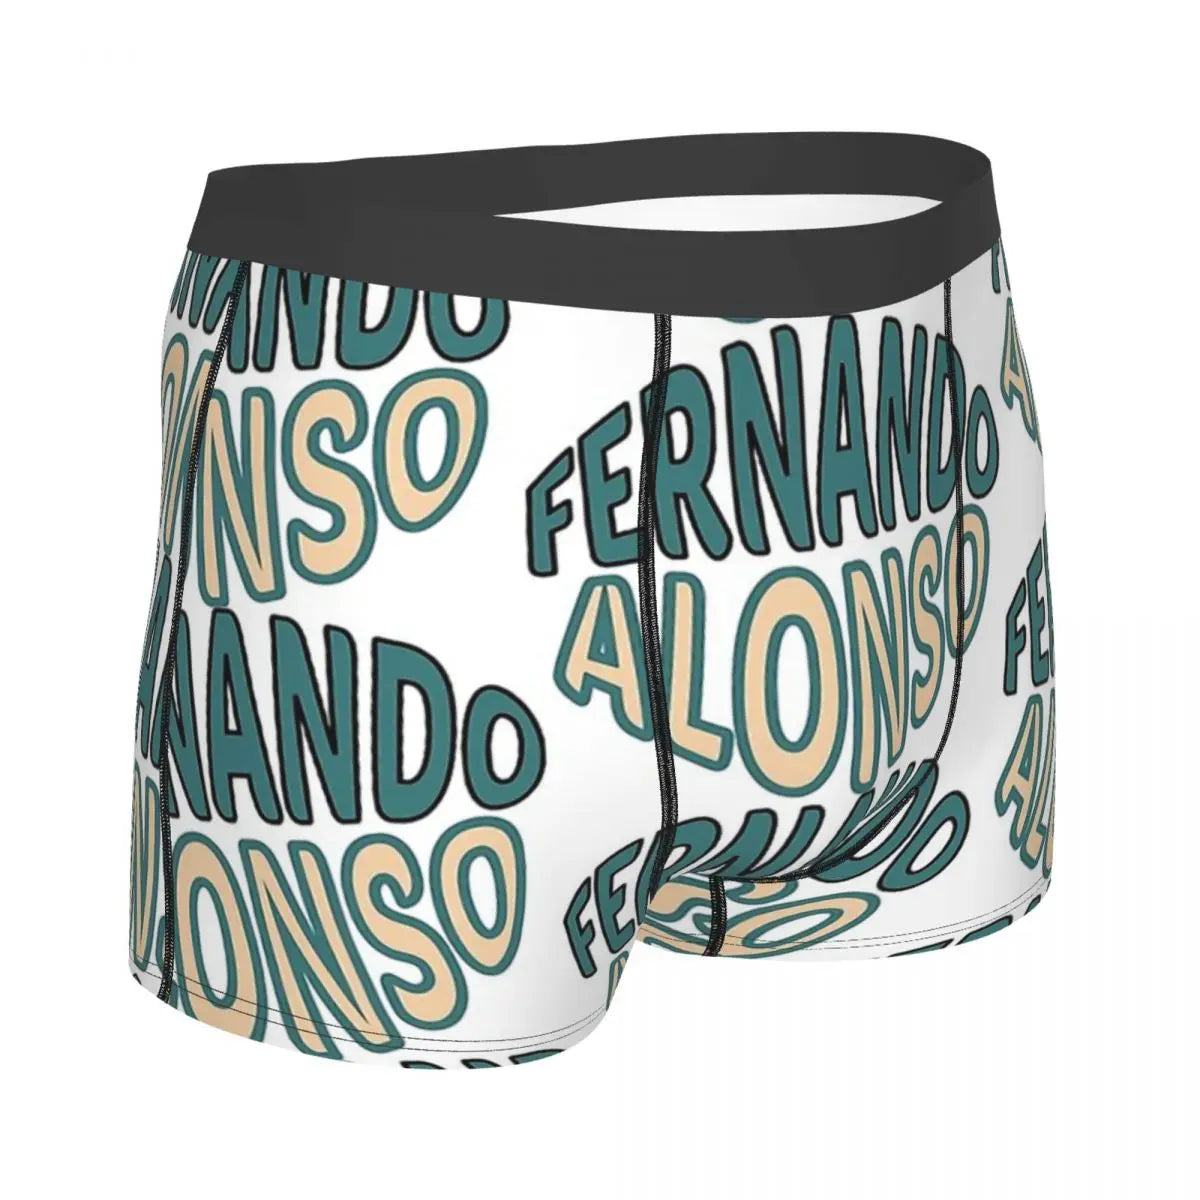 Calzoncillos Fernando Alonso Diseño Premium